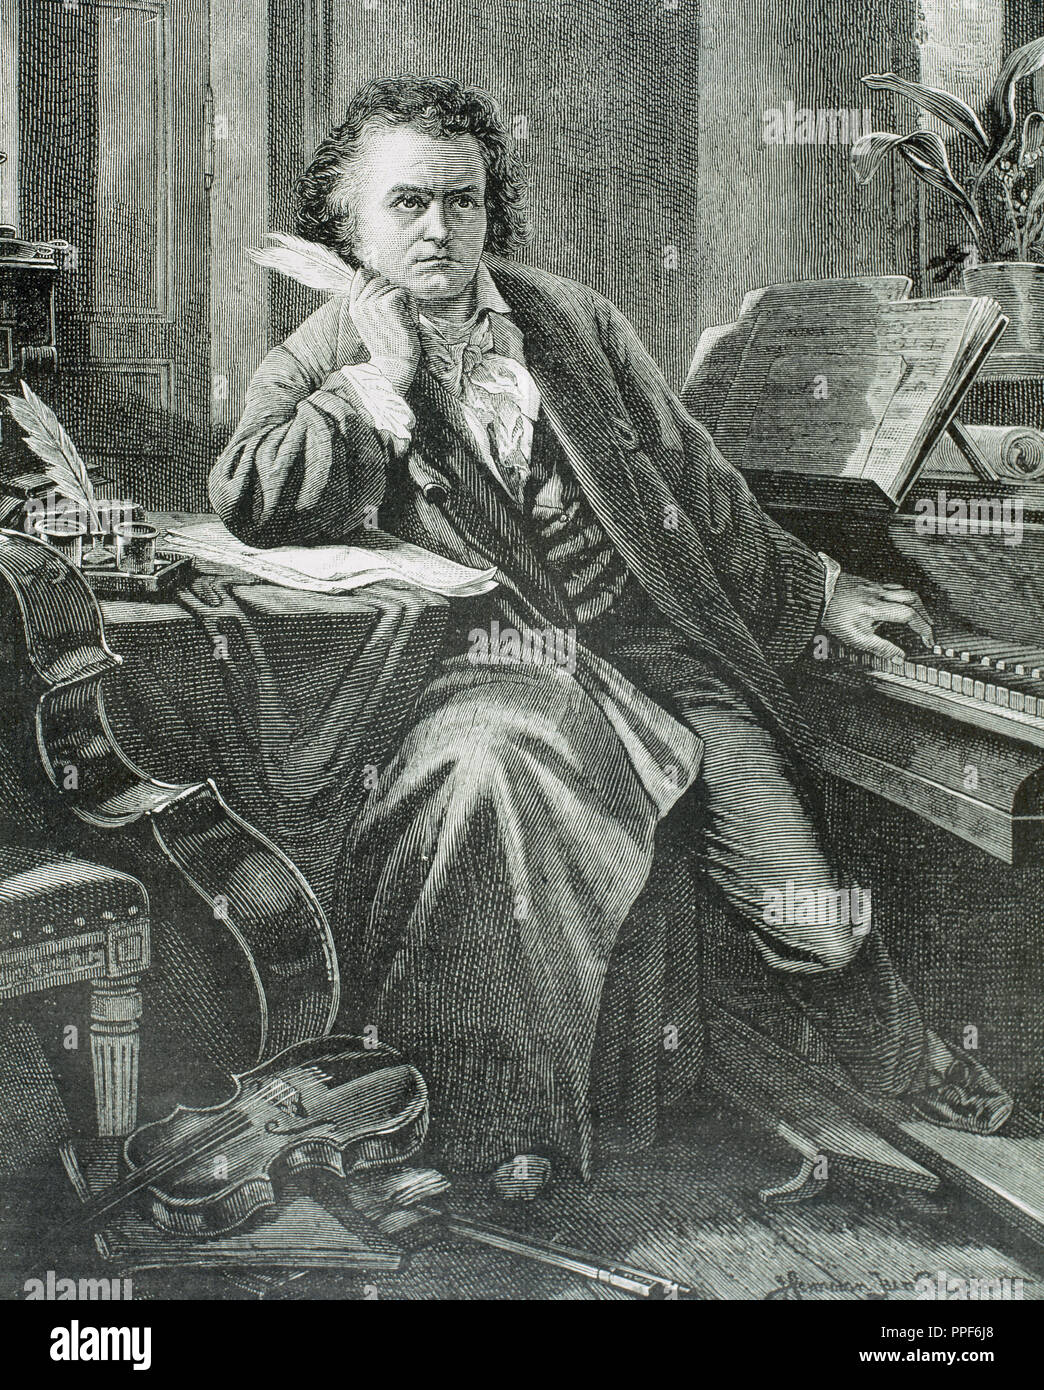 BEETHOVEN, Ludwig Van (Bonn 1770-Wien, 1827). Deutscher Komponist. XIX Jahrhundert Gravur. Stockfoto